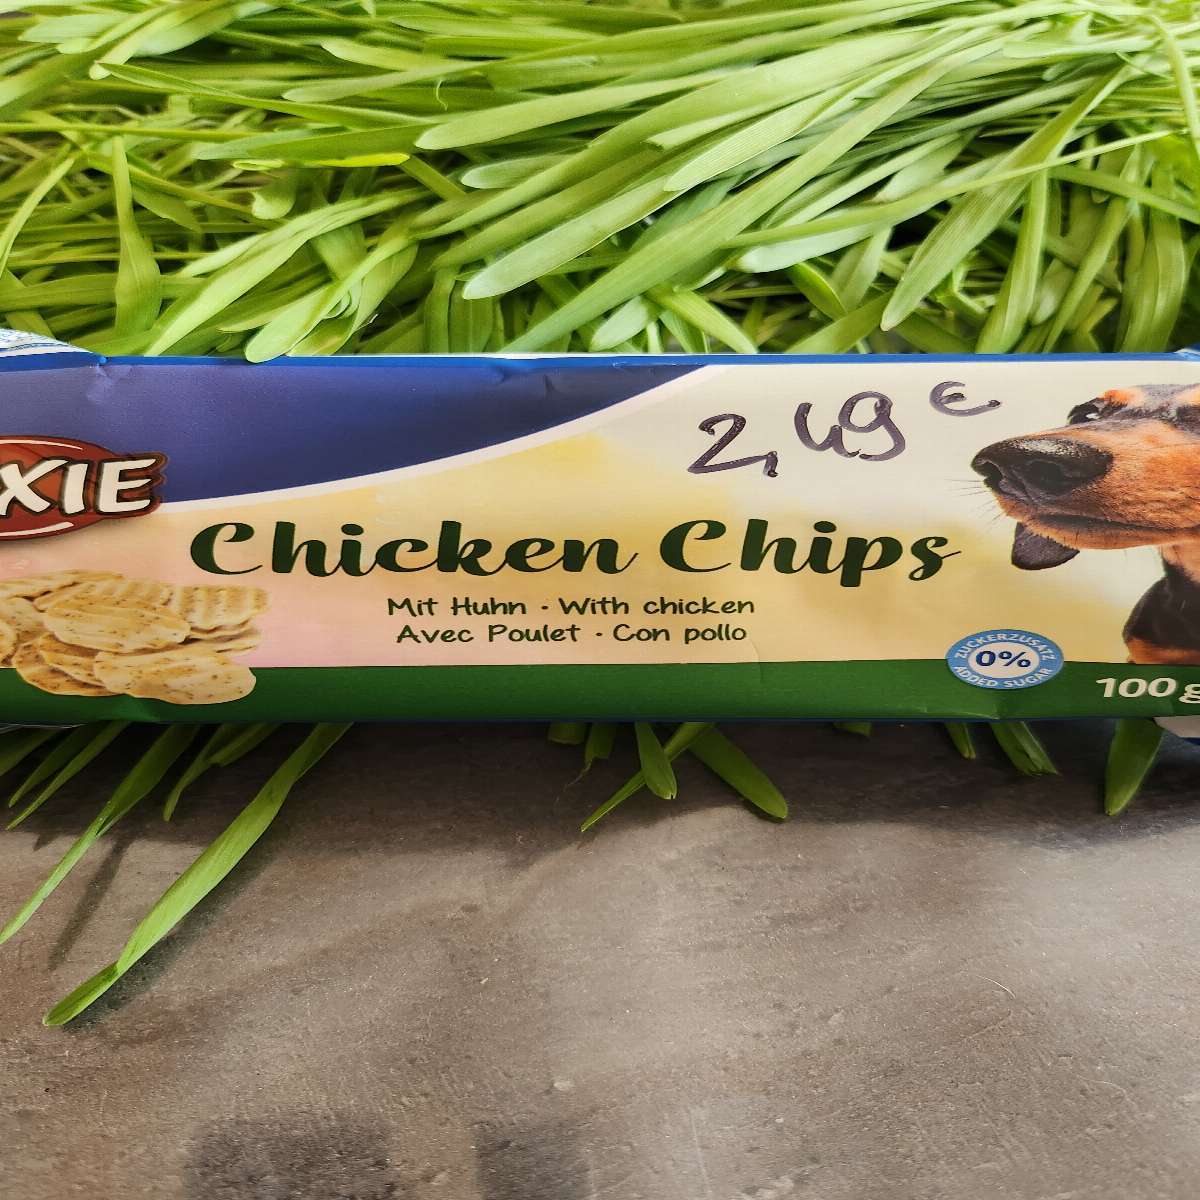 Chicken chips